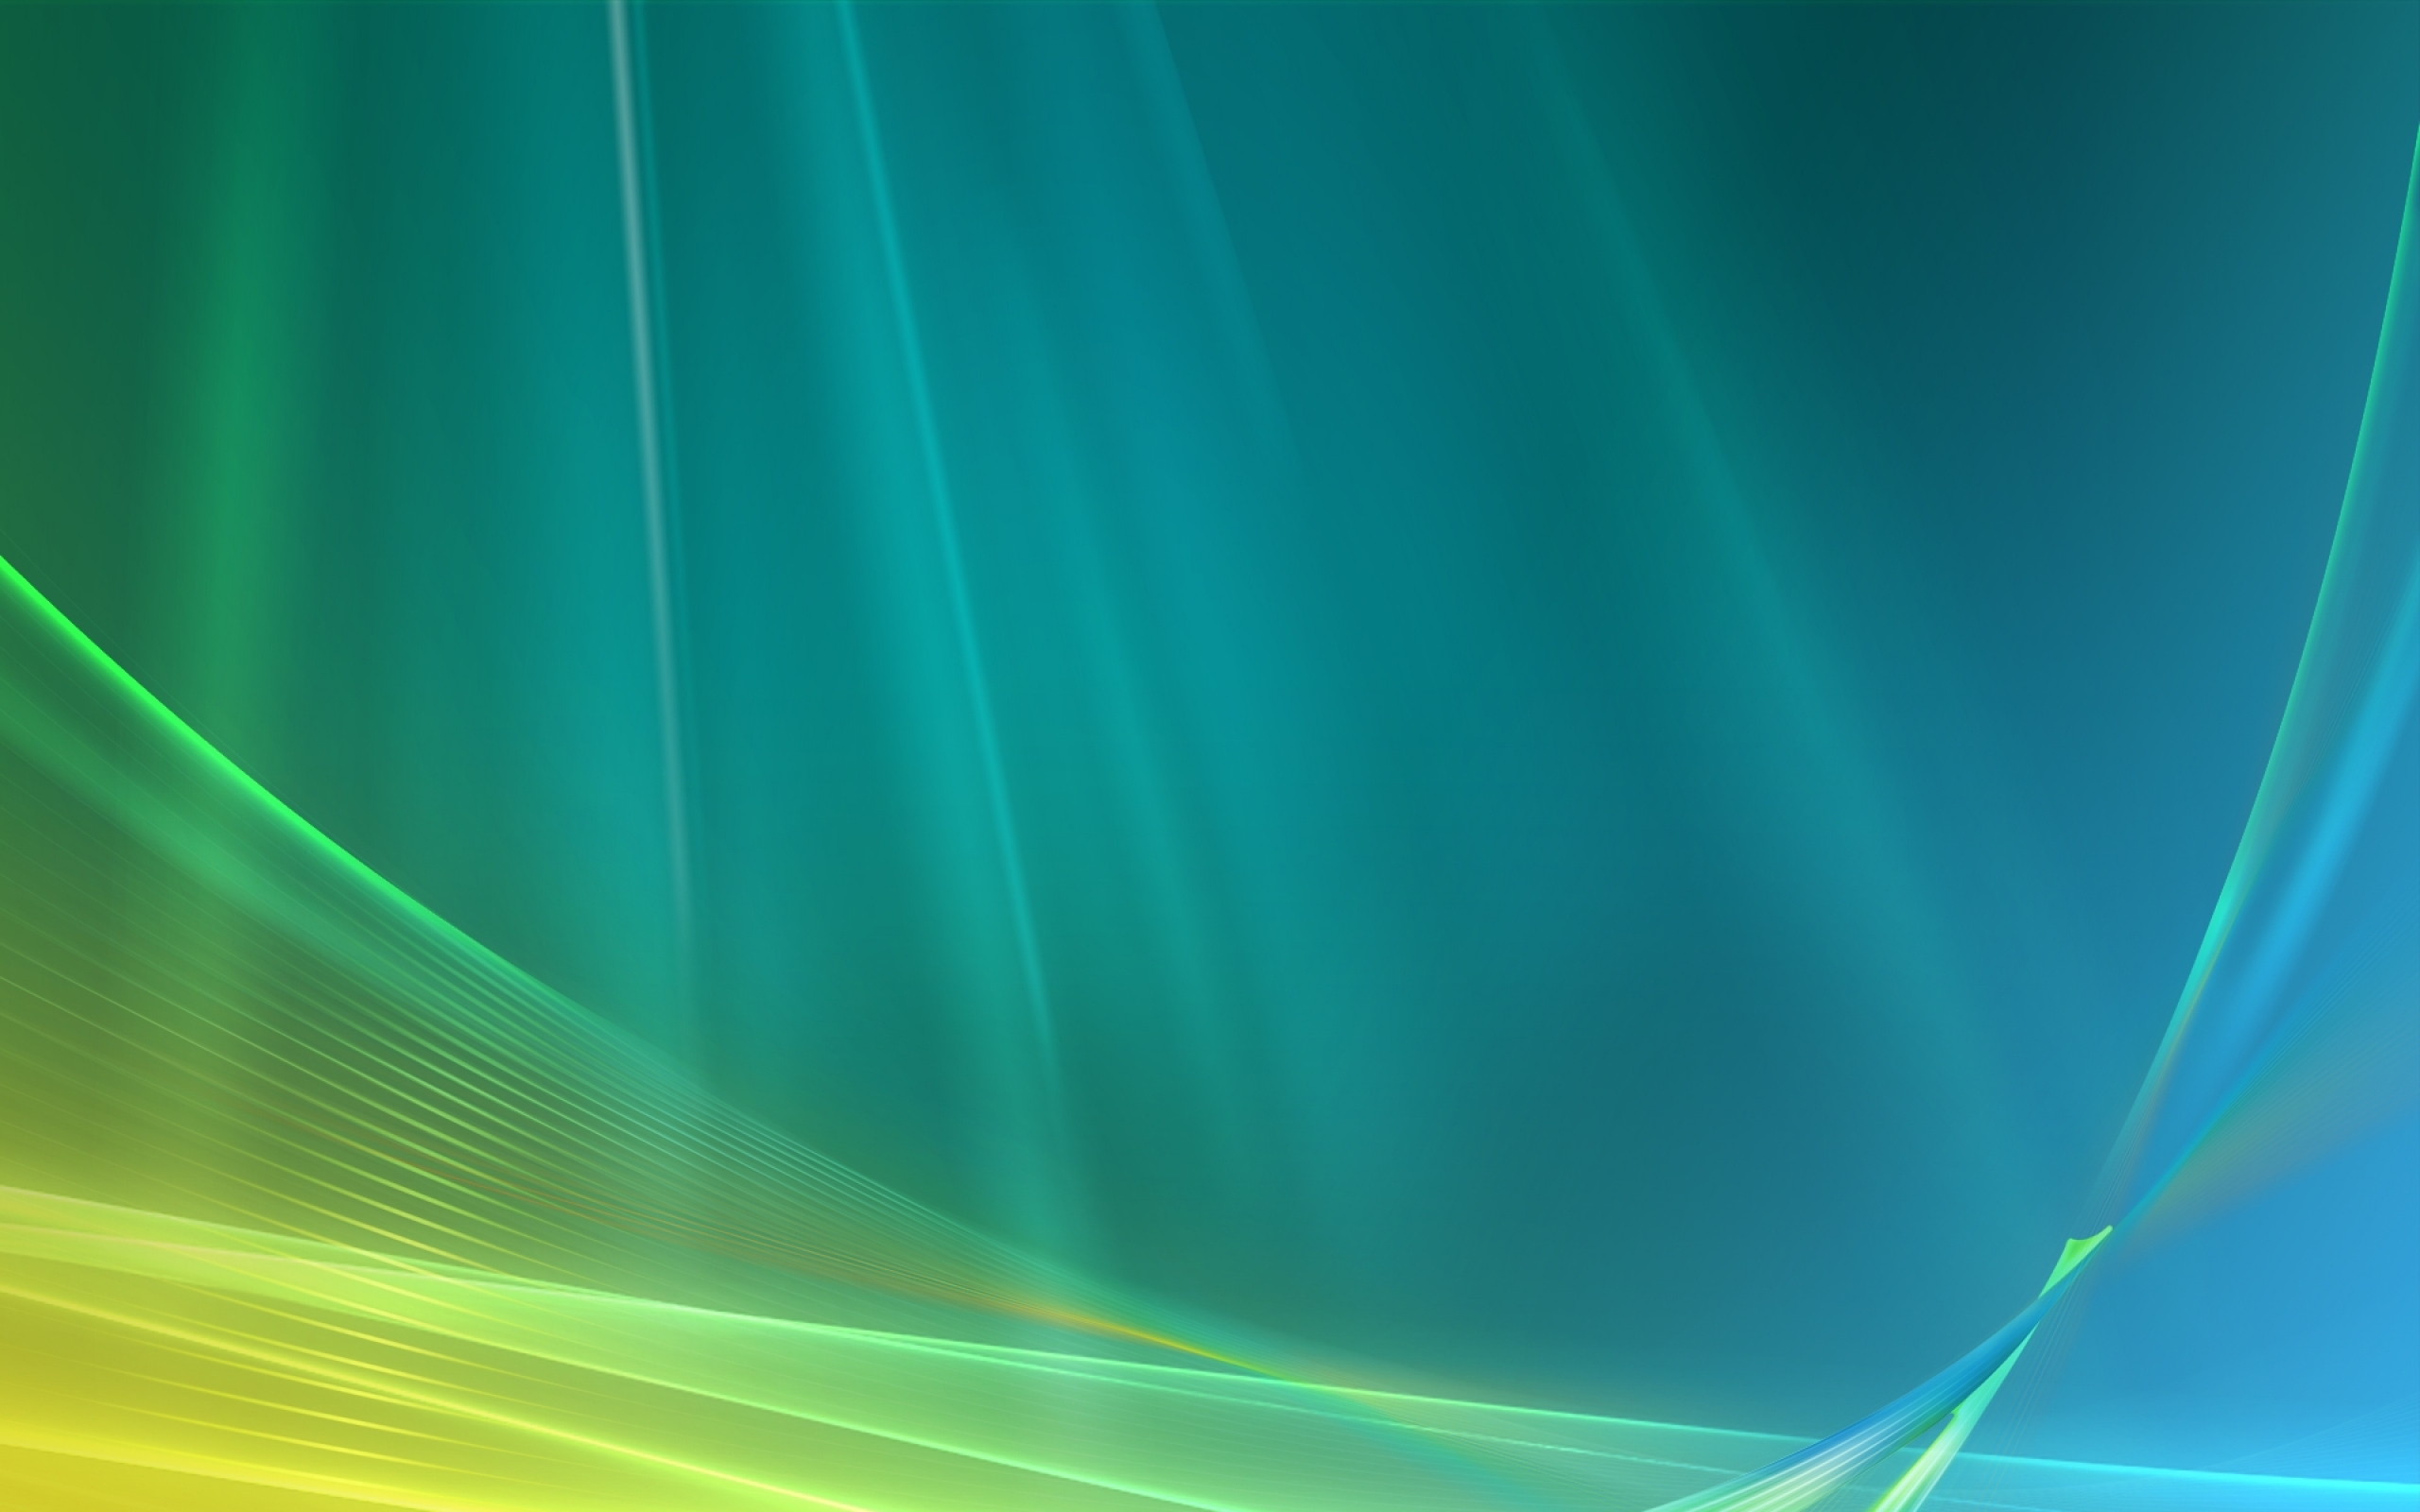 Windows Vista Background Wallpaper